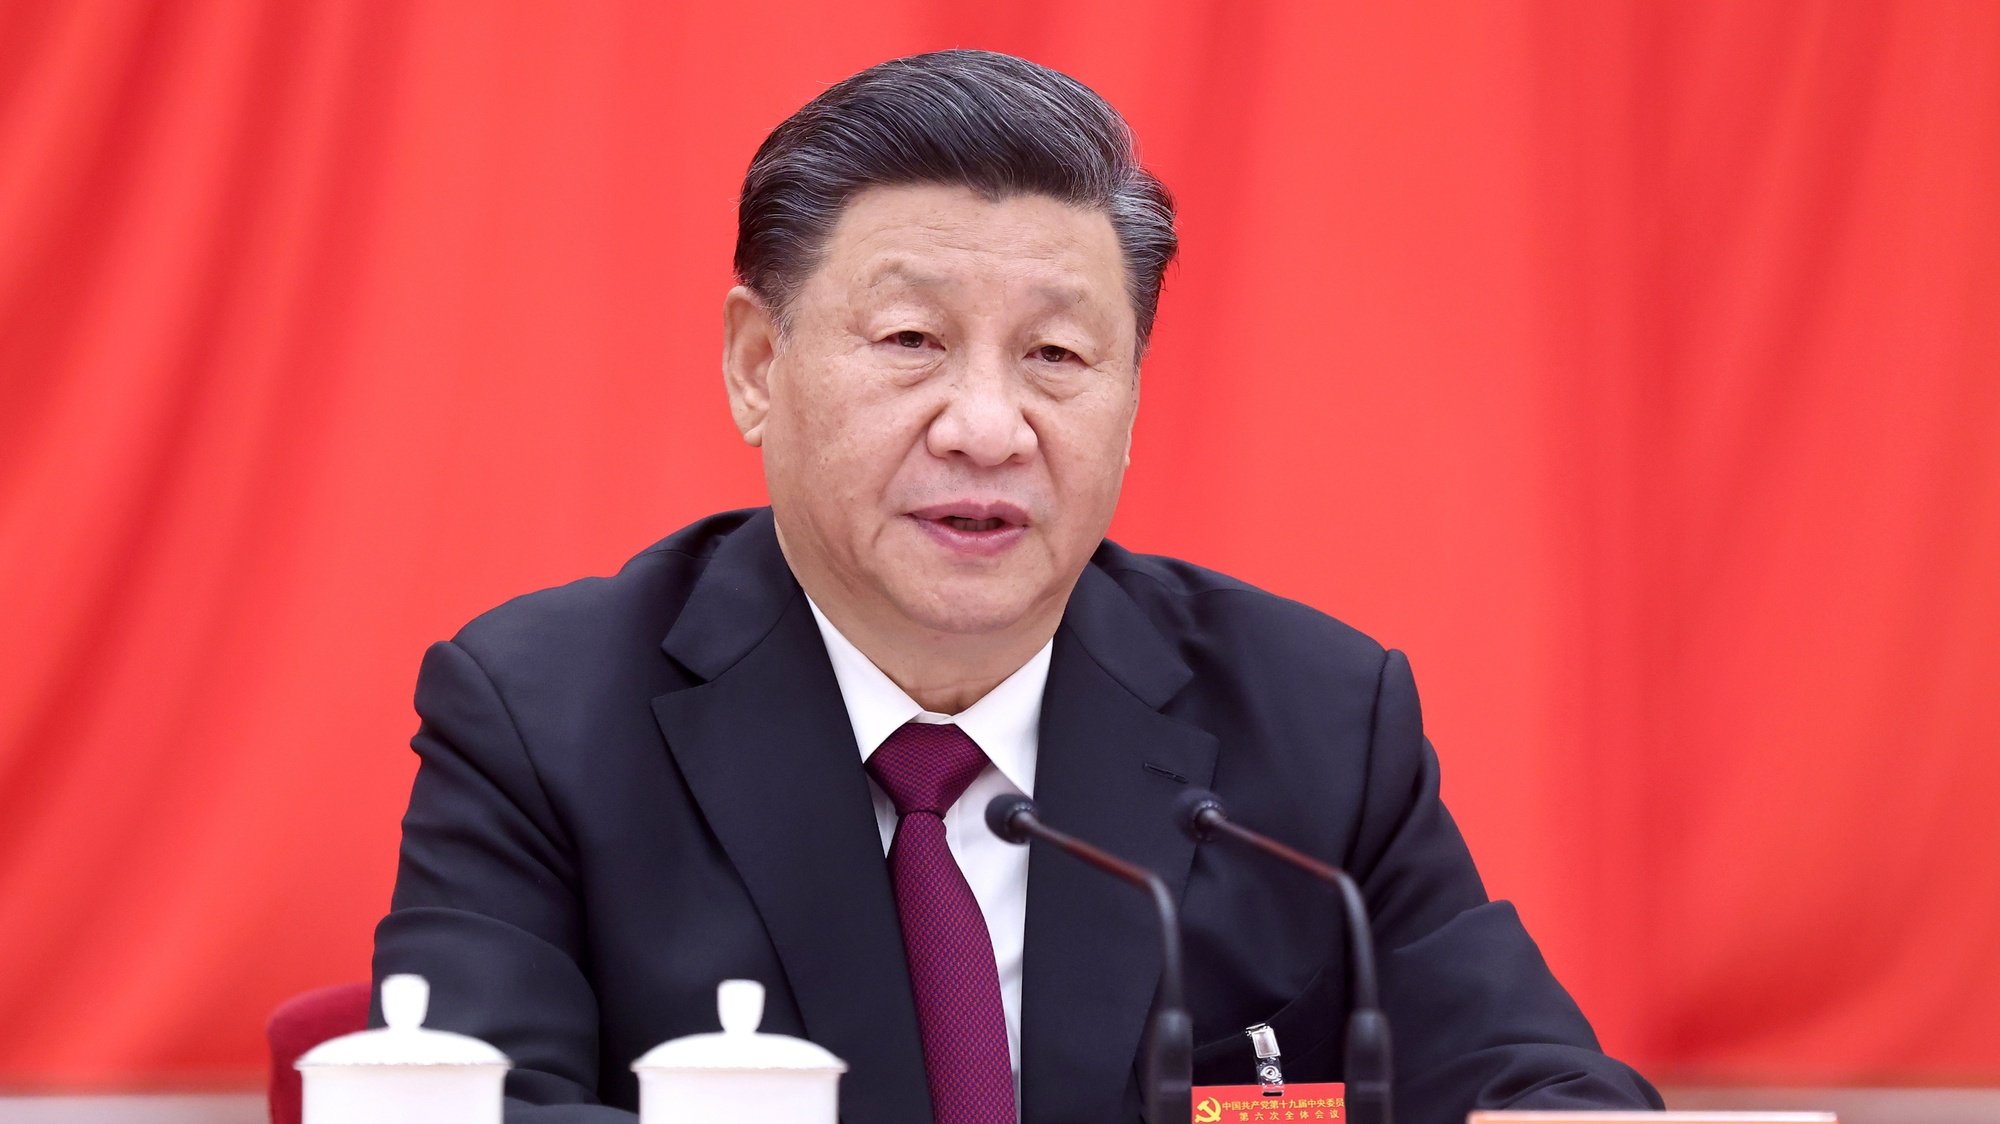 Xi Jinping, discorre num plenário do partido comunista chinês